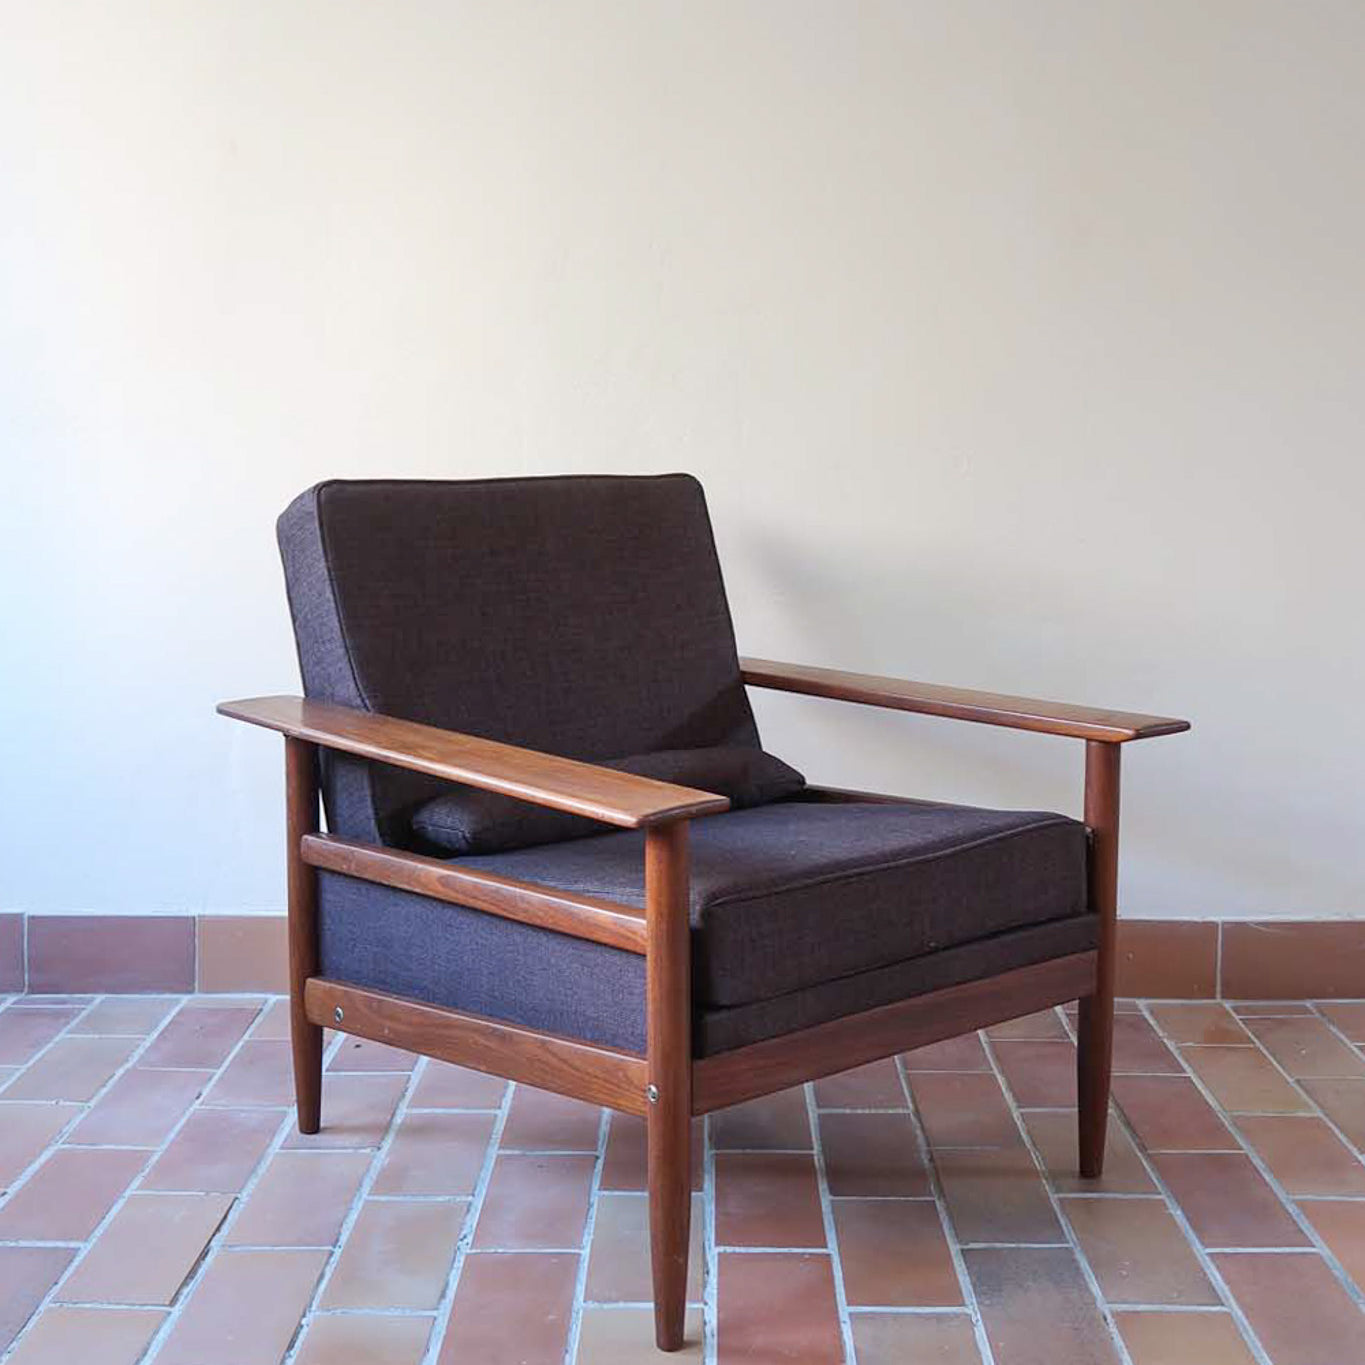 paire 2 fauteuils chauffeuse vintage walter knoll laine lainage teck bois massif pied compas salon années 60